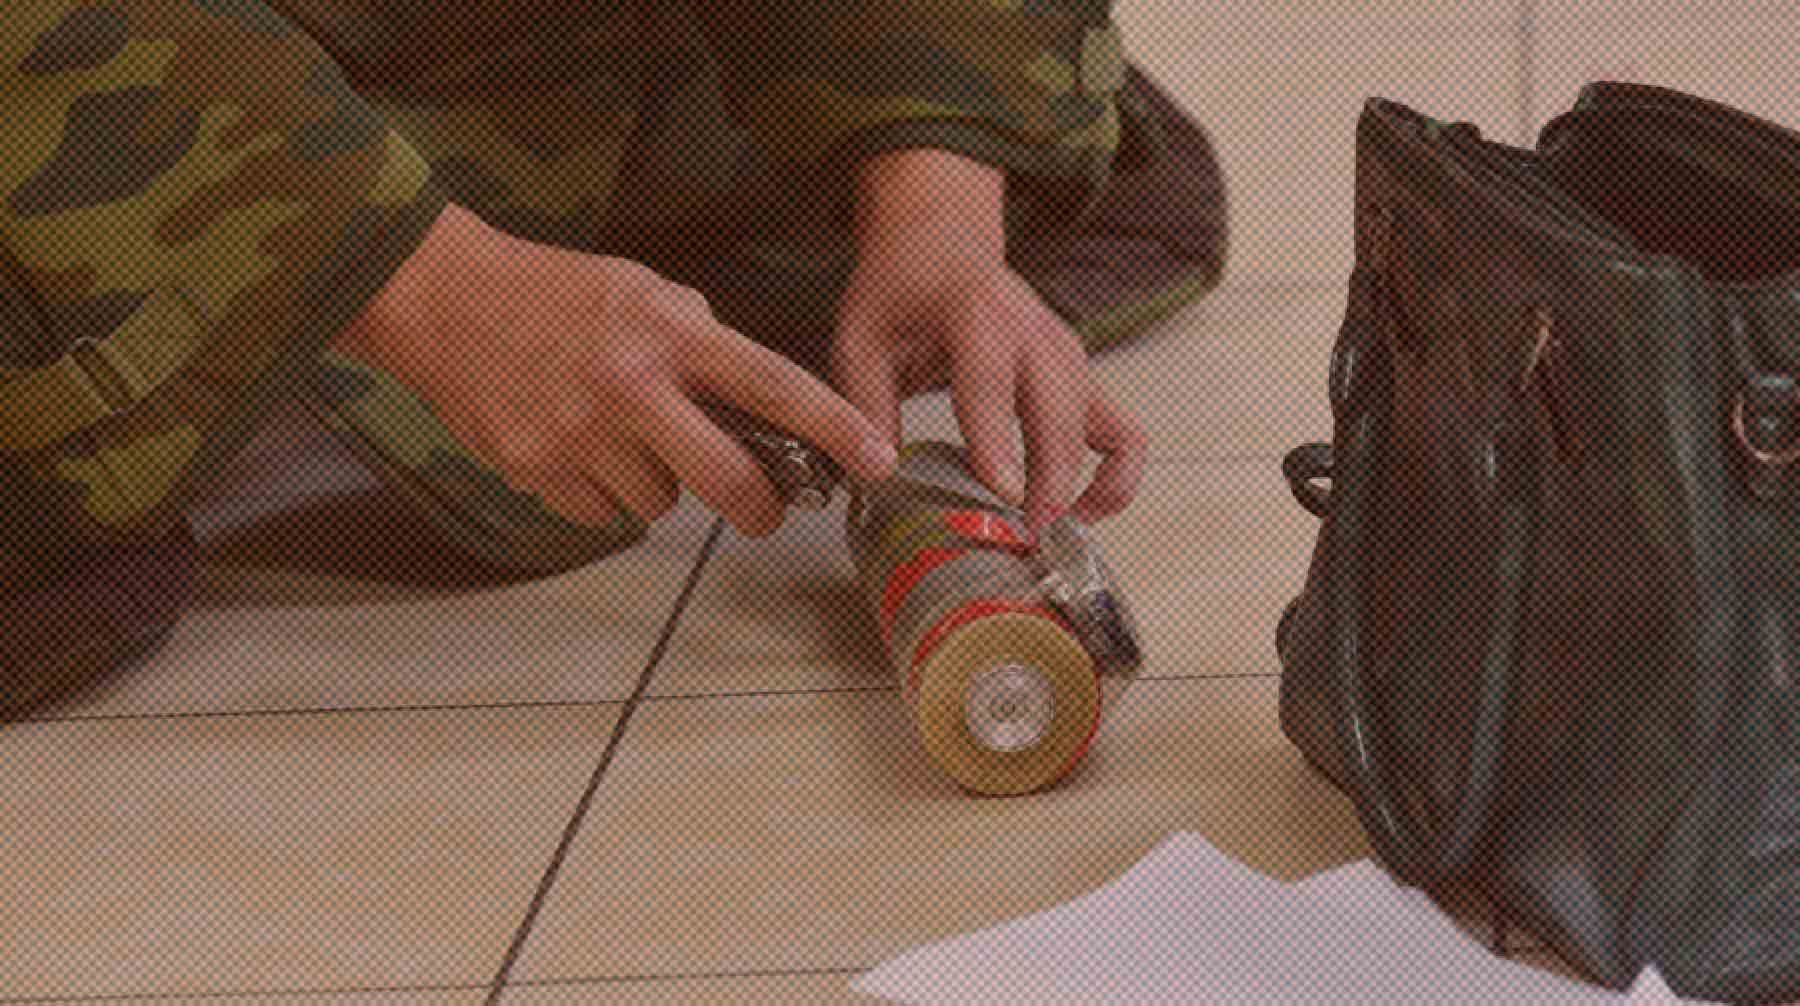 Dailystorm - Стрелок в Москве мог быть с бомбой: очевидцы перестрелки в МФЦ видели на месте ЧП саперов